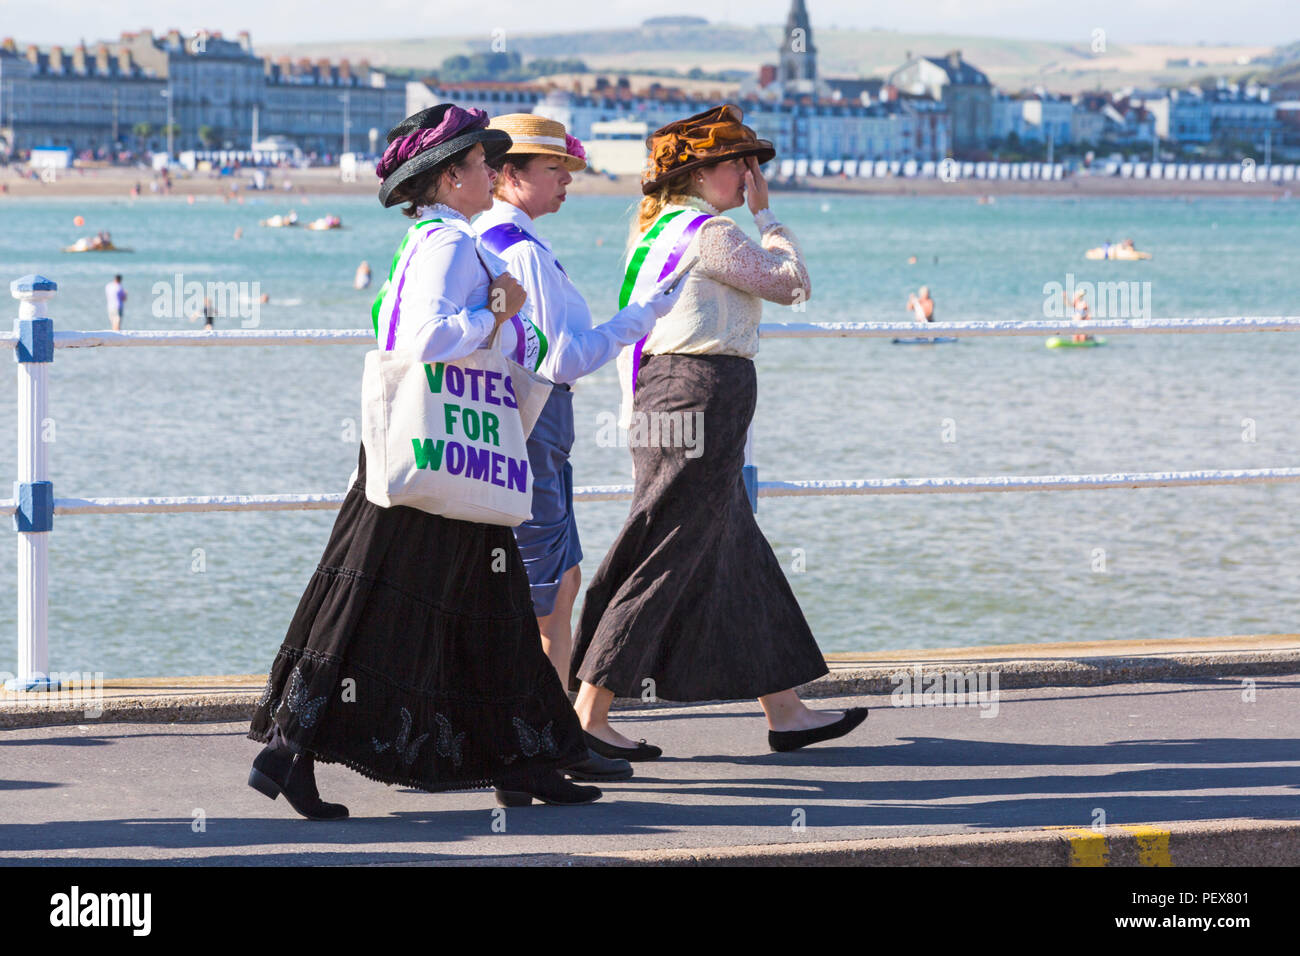 Le vote des femmes mesdames se préparent à prendre part à la procession annuelle carnival parade à Weymouth, Dorset UK en Août Banque D'Images